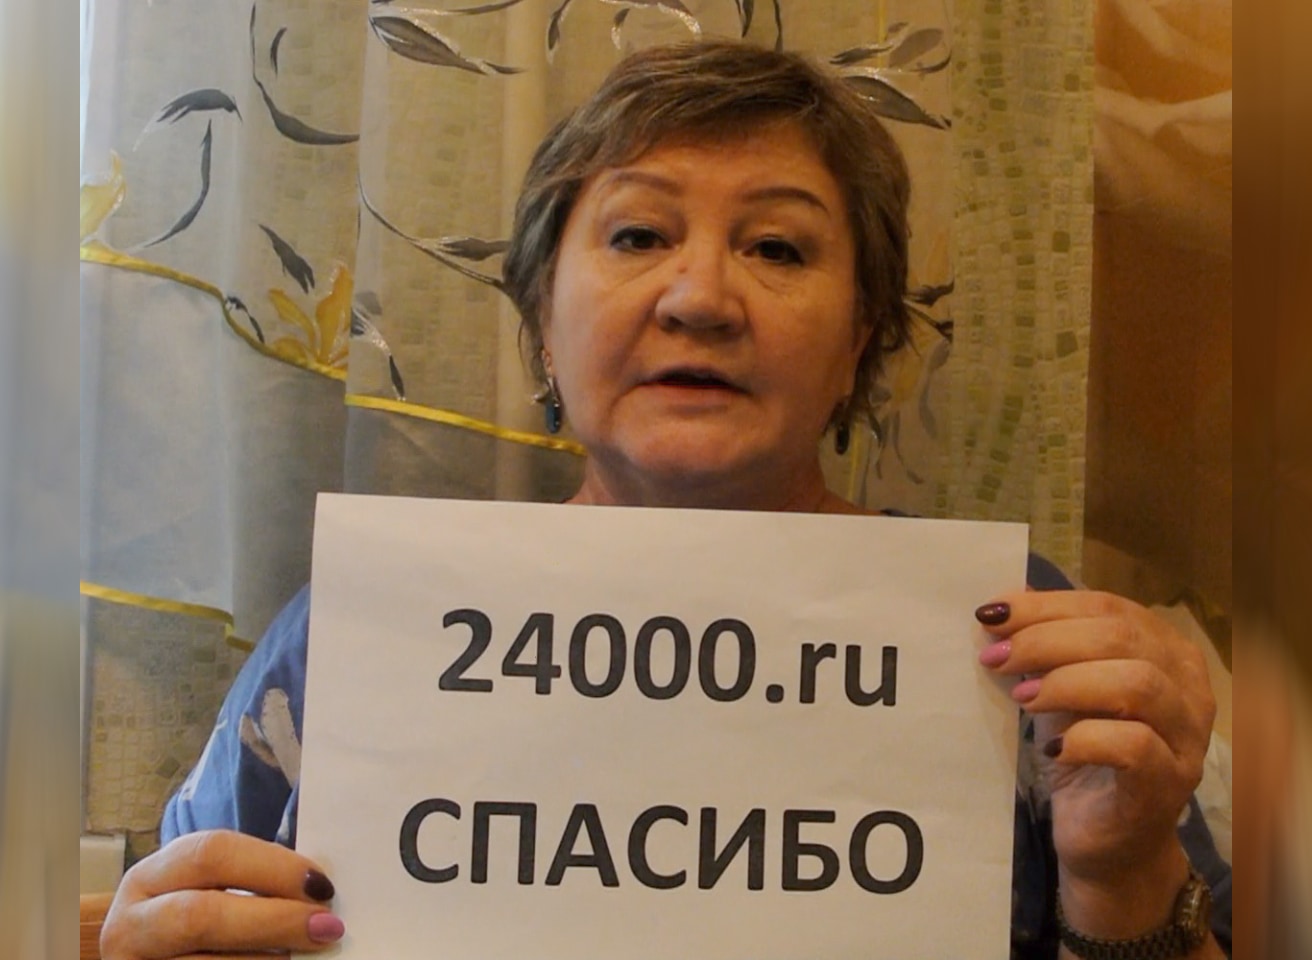 Помощь на оплату лечения помощь богатых 24000.ru отзывы